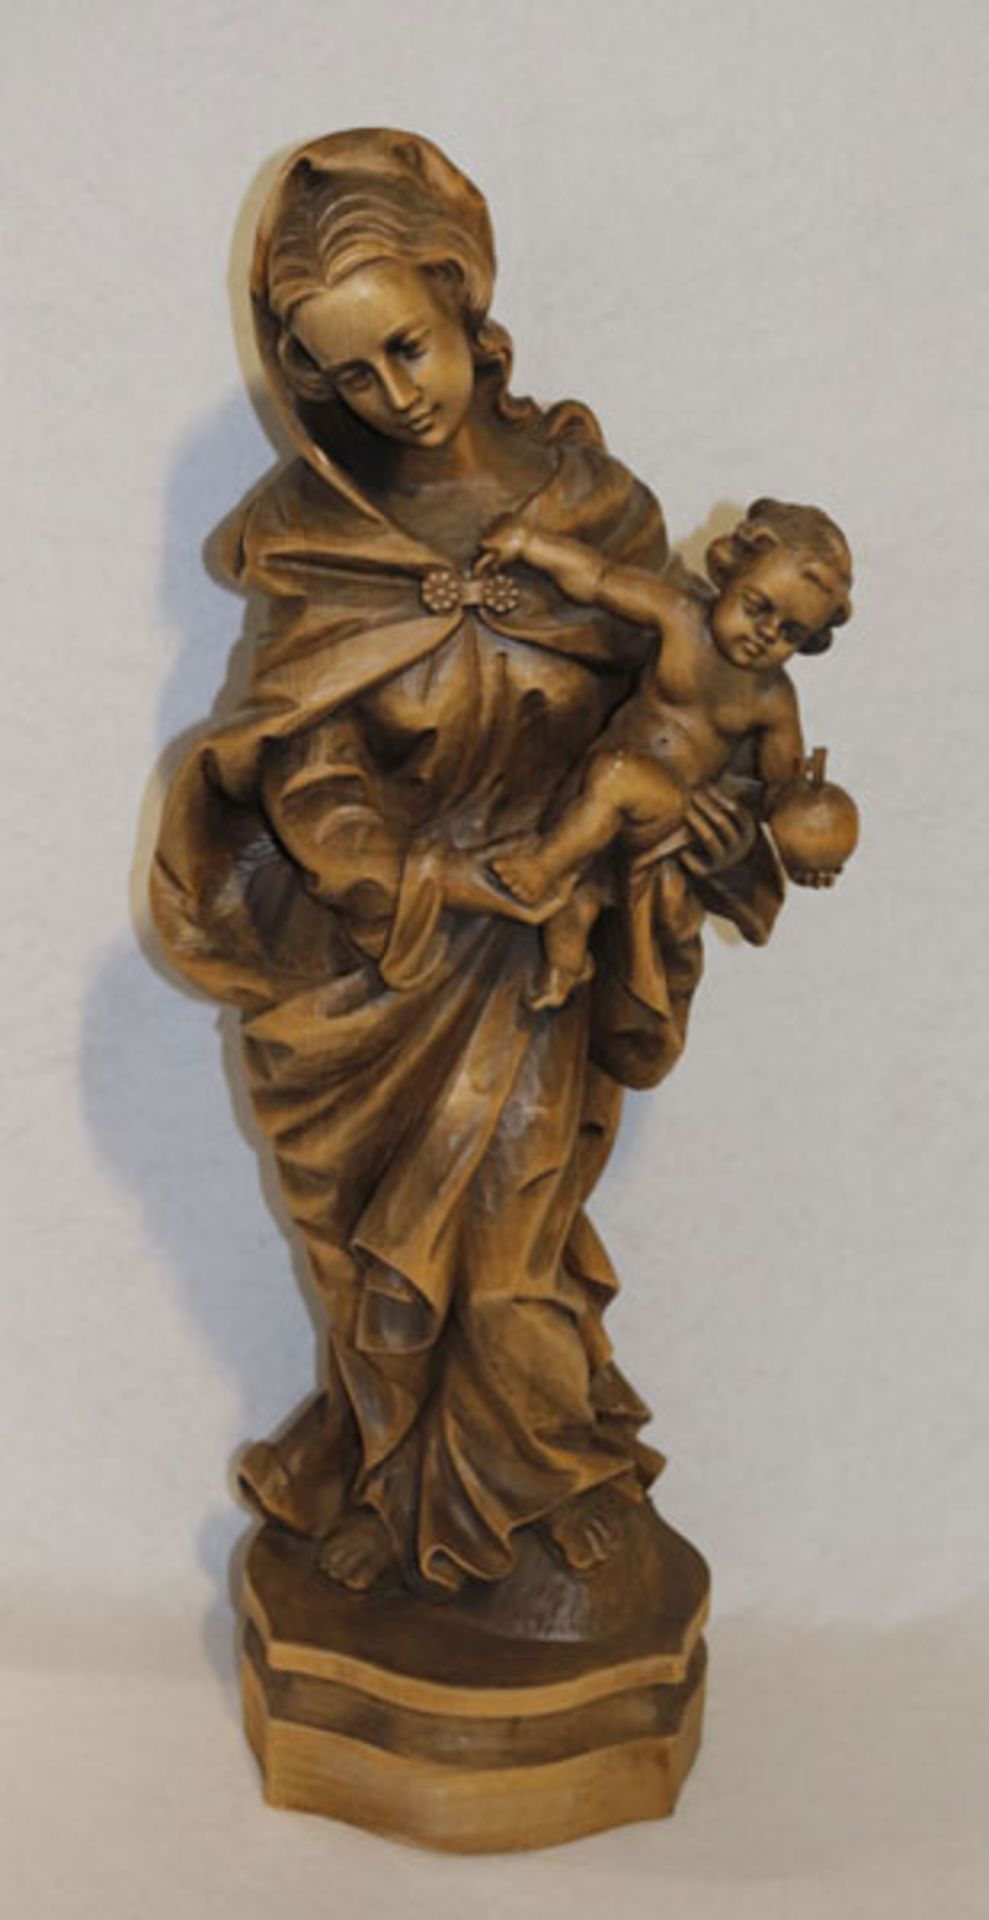 Holz Figurenskulptur 'Maria mit Kind', dunkel gebeizt, teils bestossen, H 69 cm, B 22 cm, T 18 cm